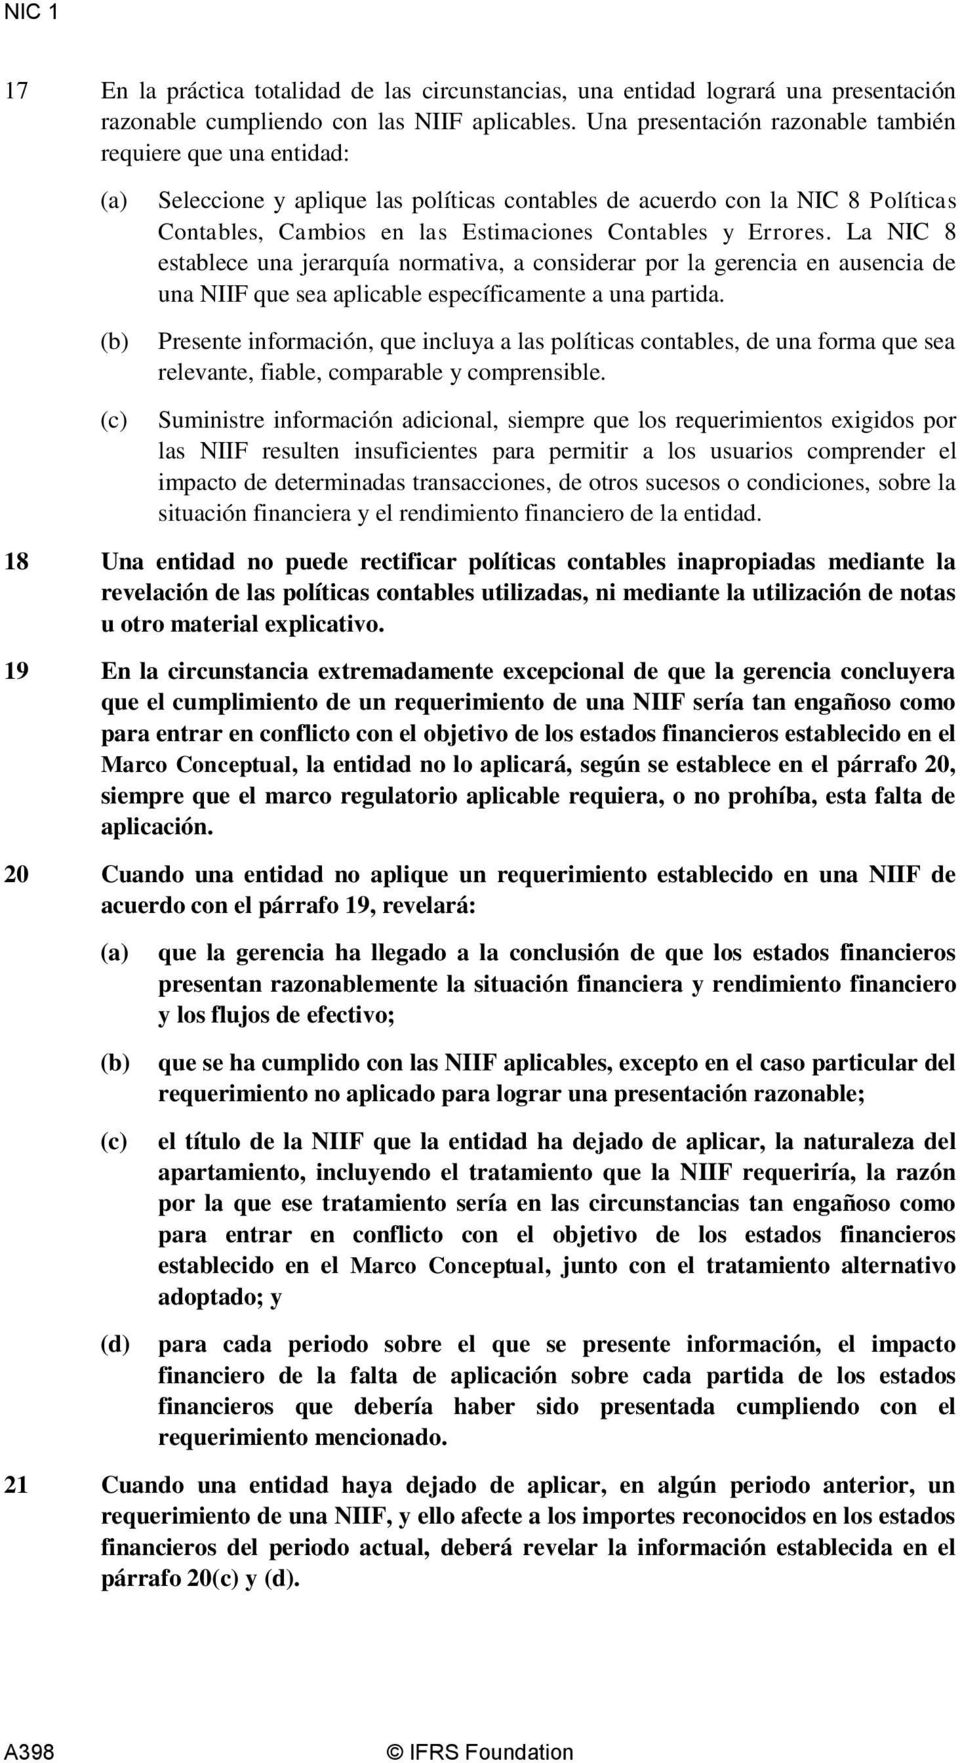 La NIC 8 establece una jerarquía normativa, a considerar por la gerencia en ausencia de una NIIF que sea aplicable específicamente a una partida.